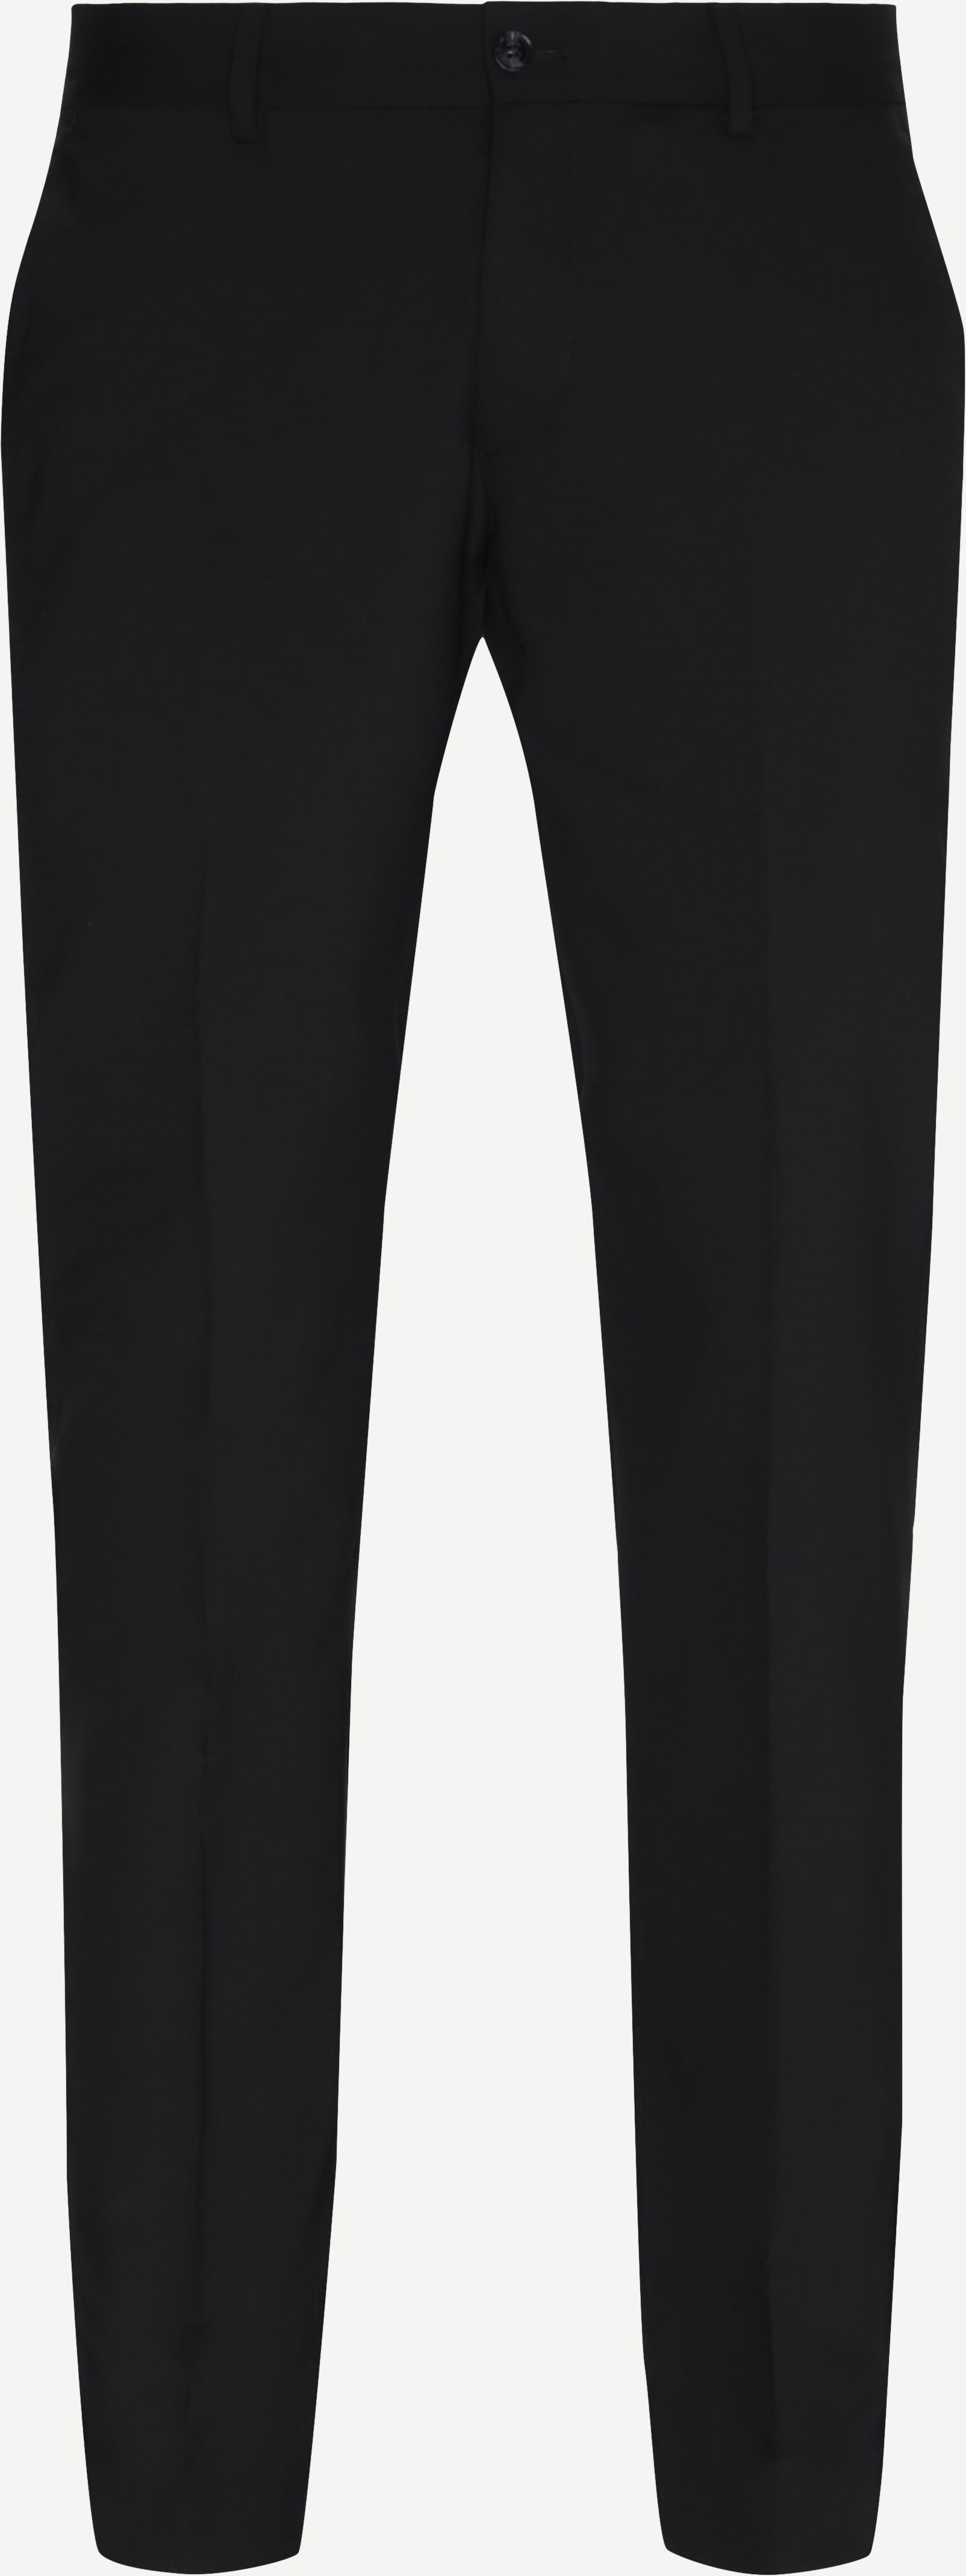 Herris Trousers - Trousers - Slim fit - Black